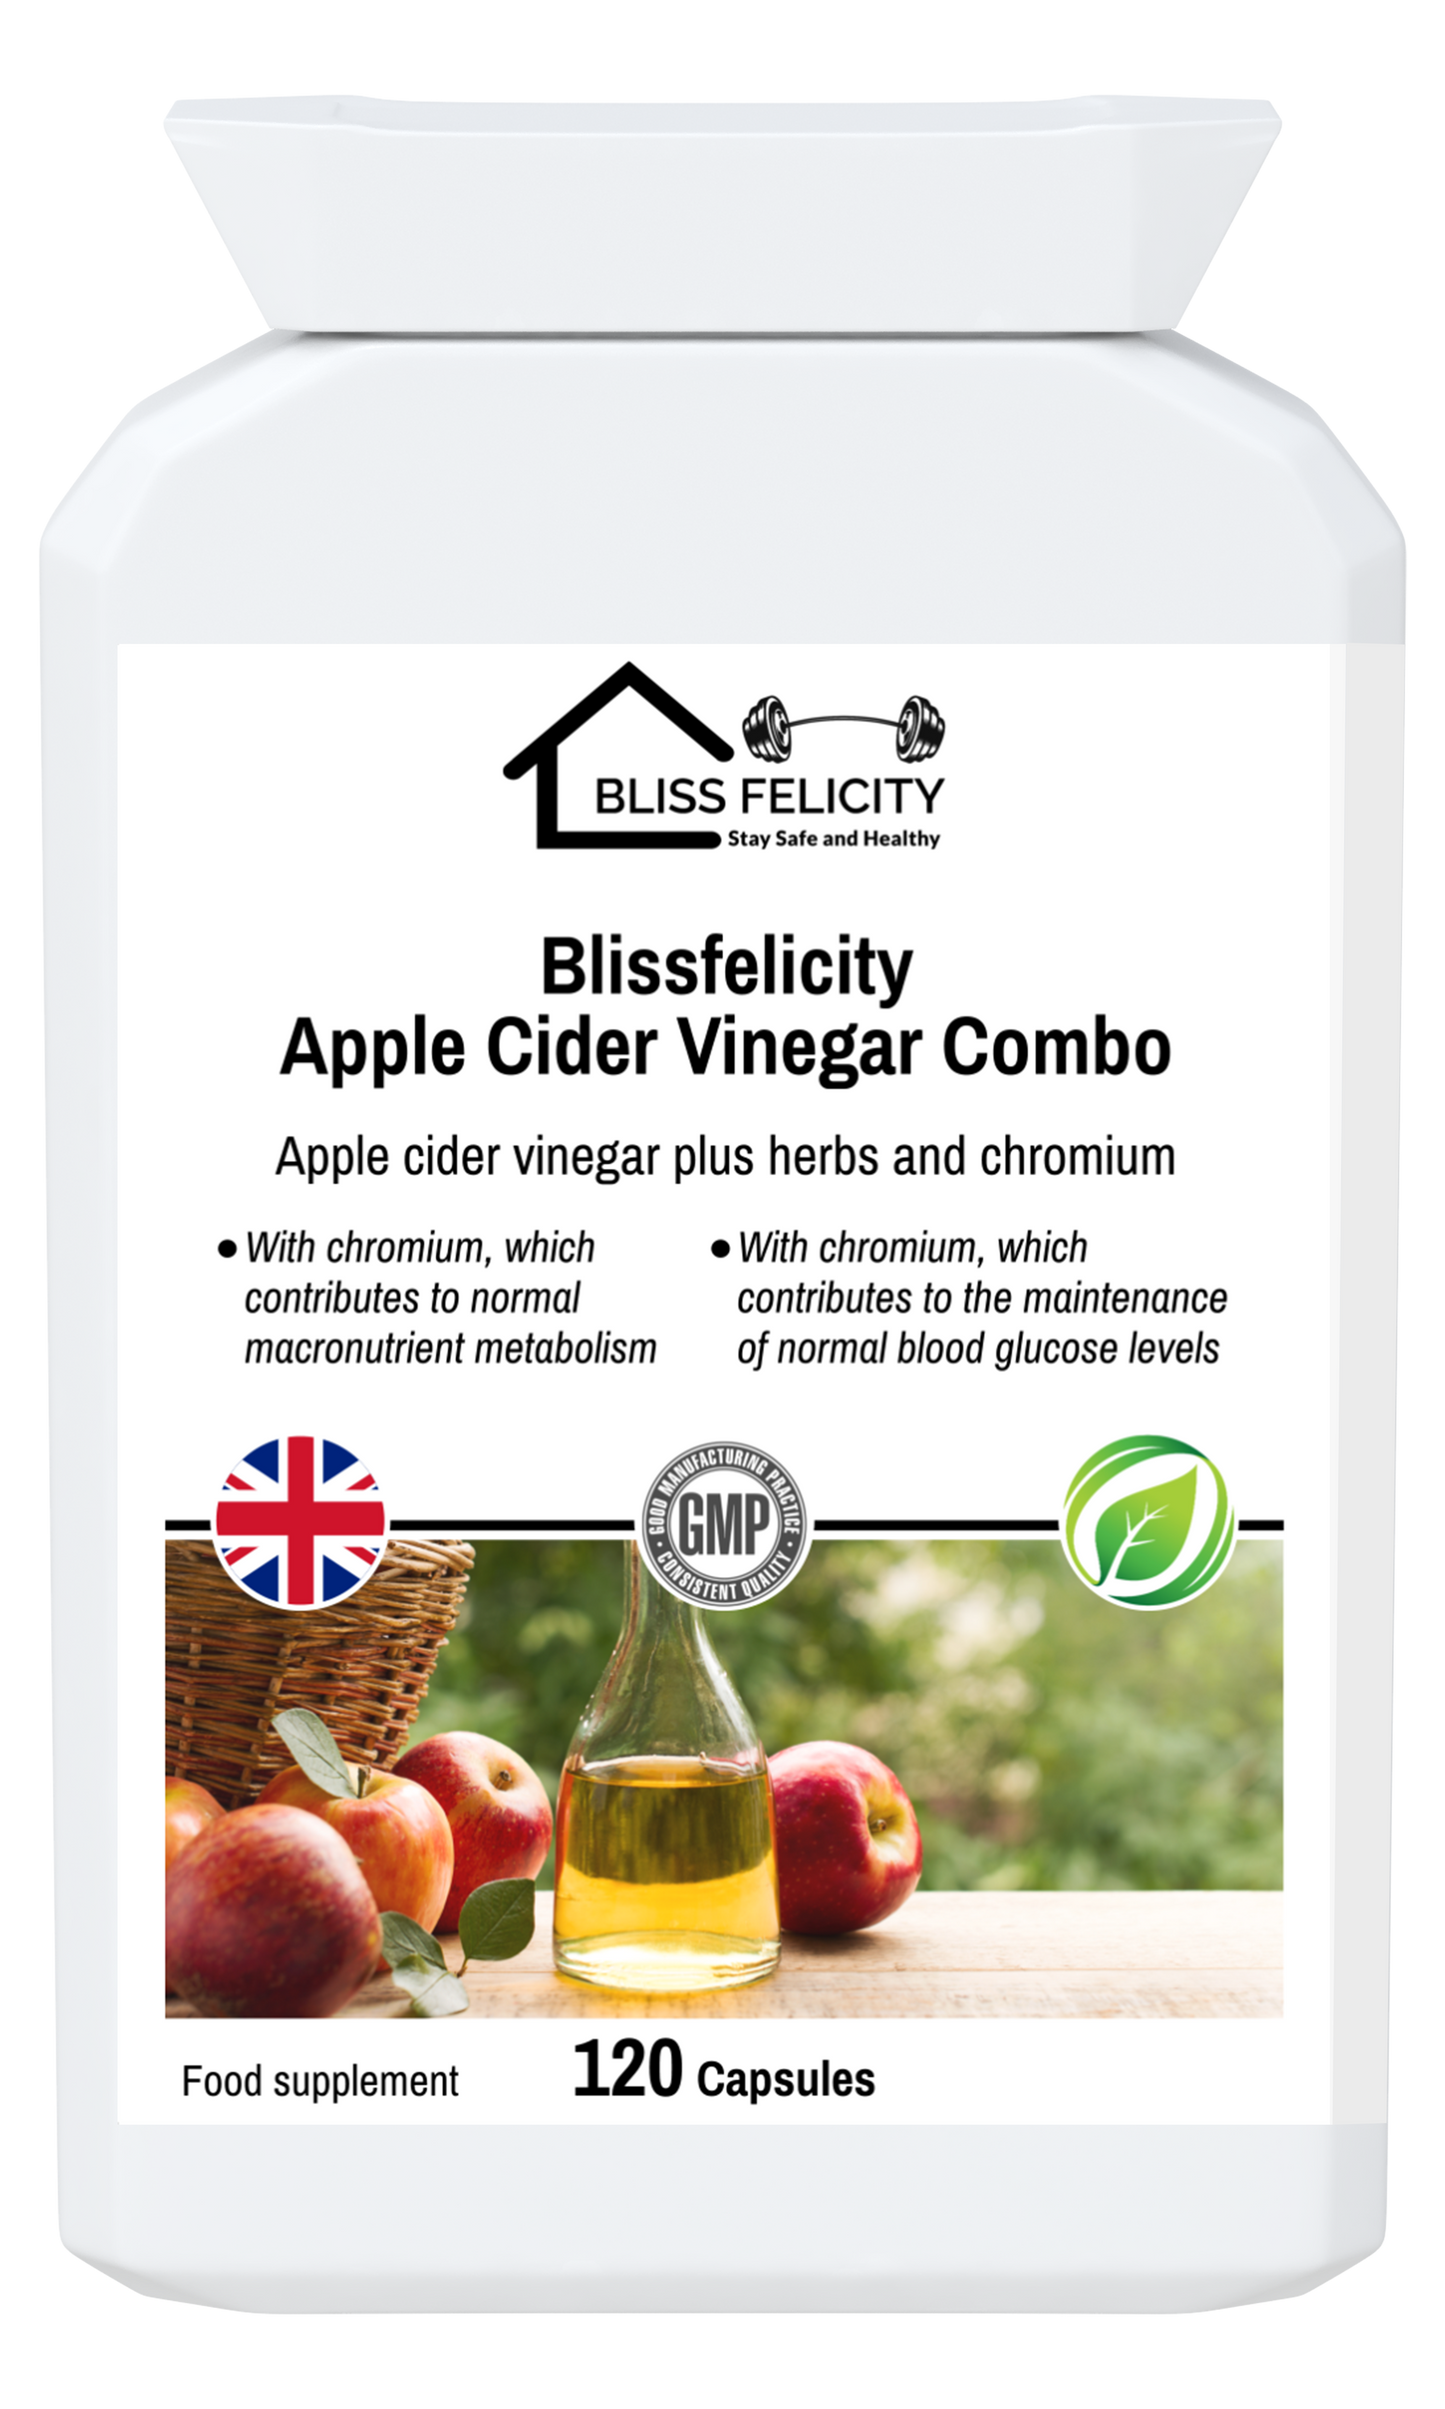 Blissfelicity Apple Cider Vinegar Combo